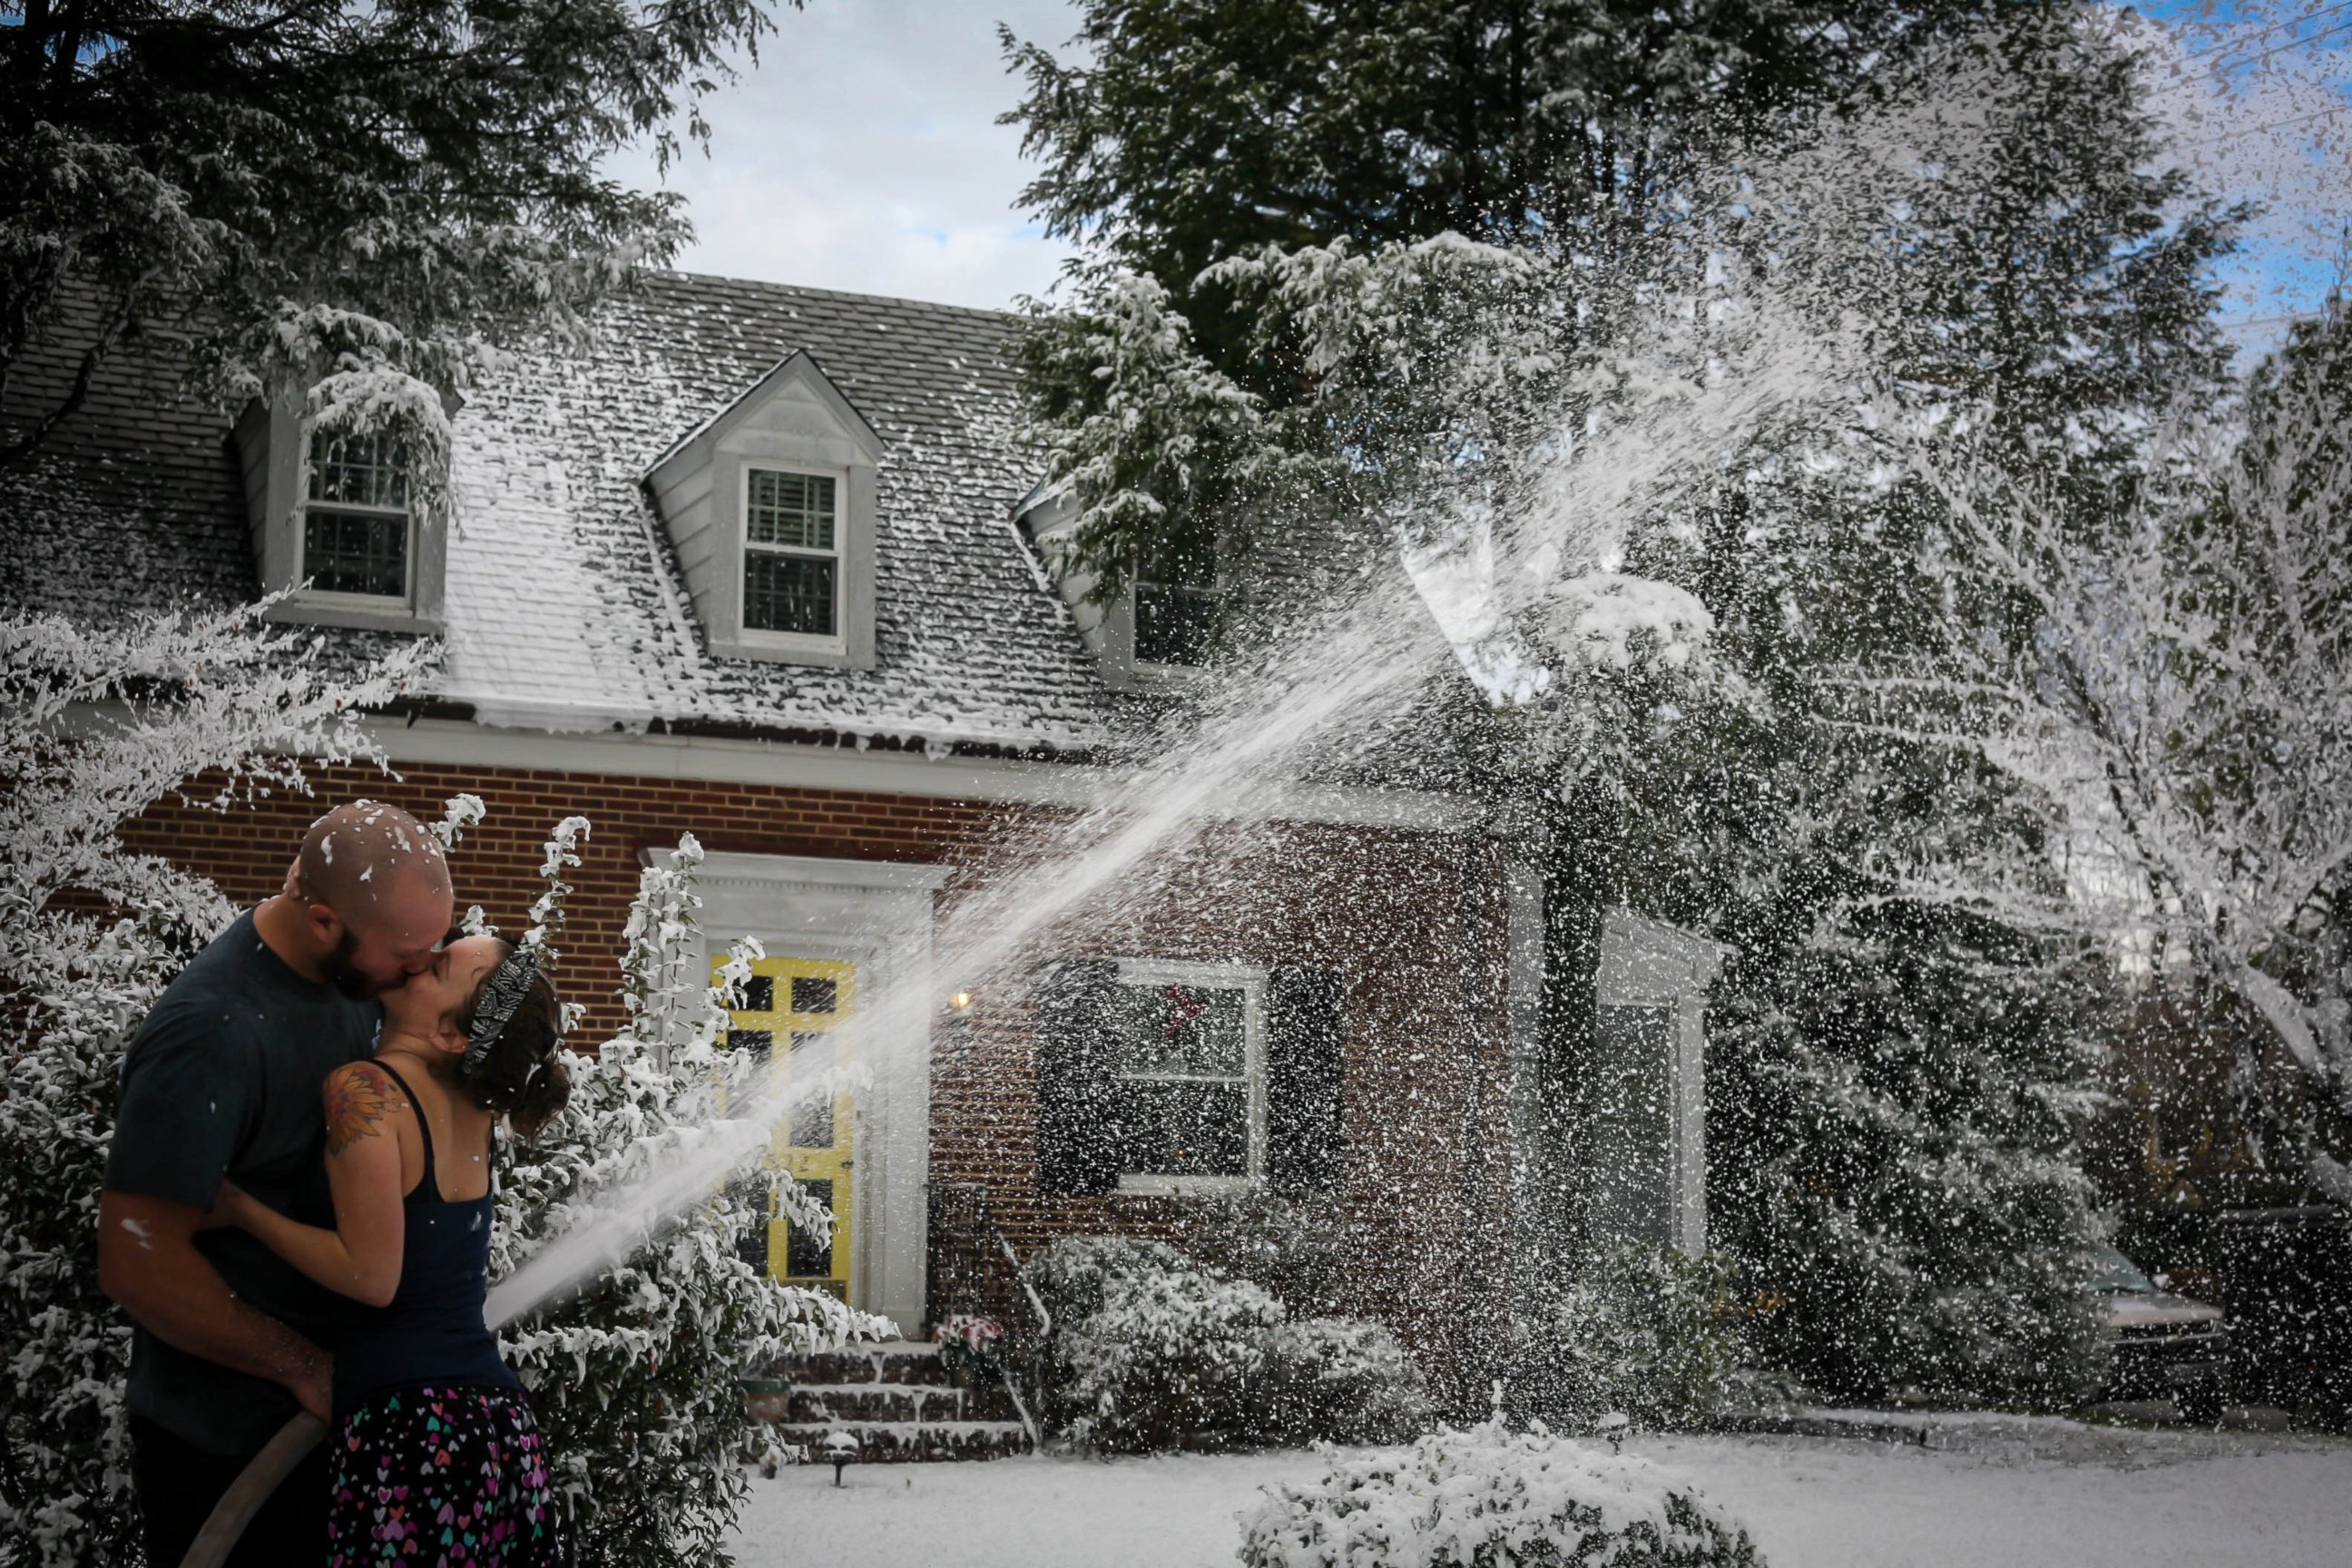 PHOTO: Trevor Smithson used fake snow to create a white Christmas for his wife, Kourtney, in Richmond, Virginia.